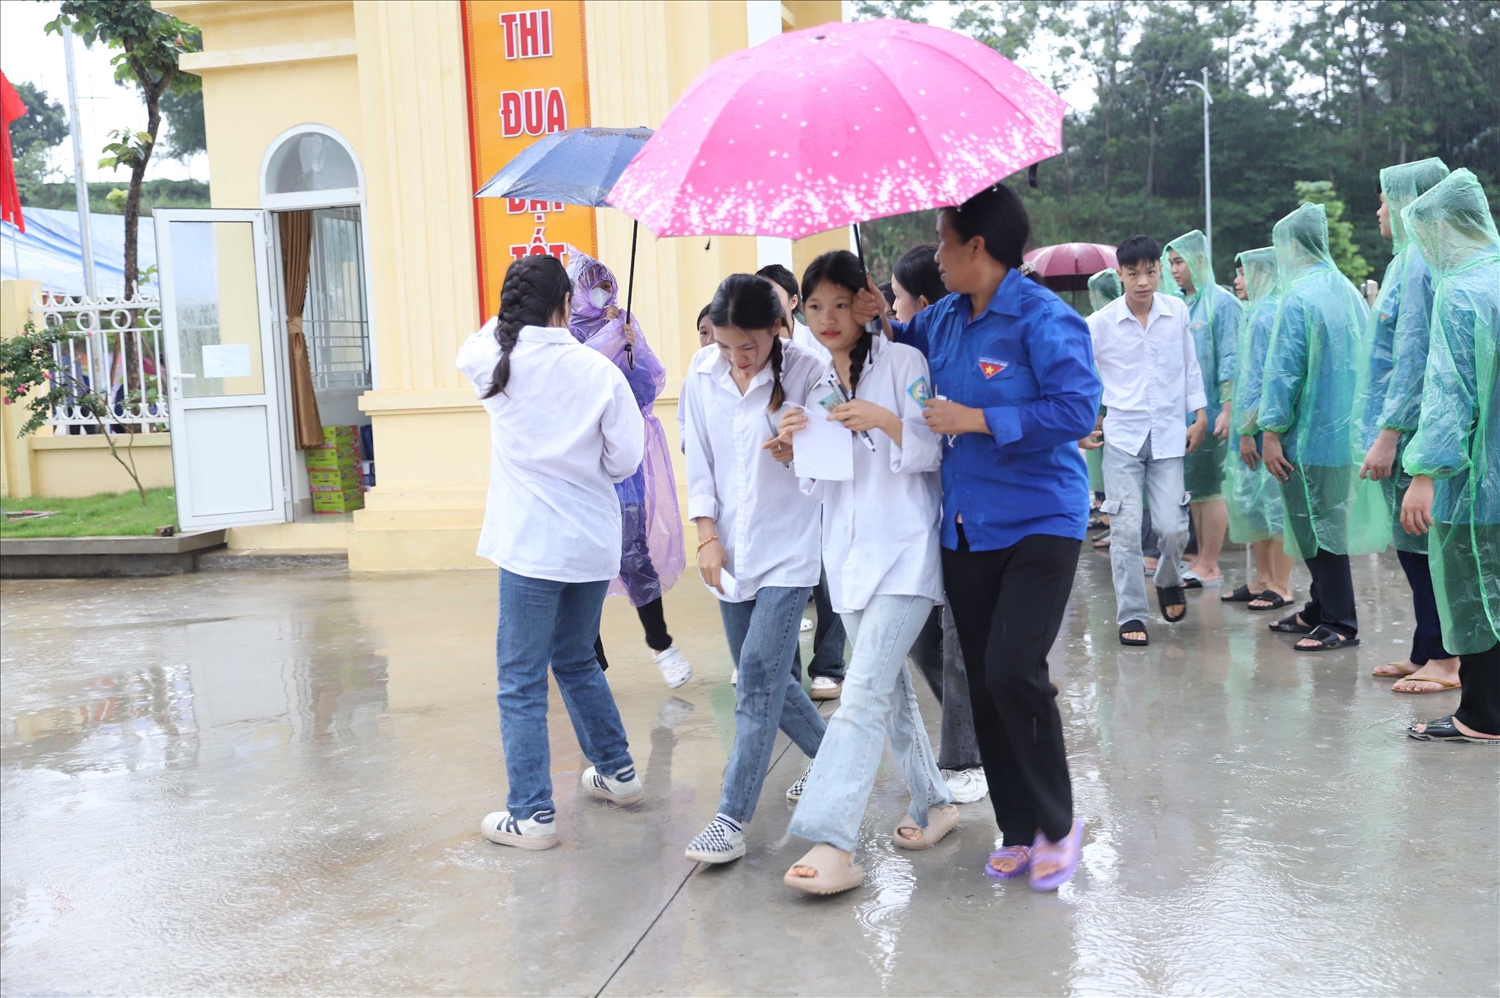 Cùng với cả nước, 291 thí sinh huyện Bình Liêu, tỉnh Quảng Ninh đã đến điểm thi đông đủ